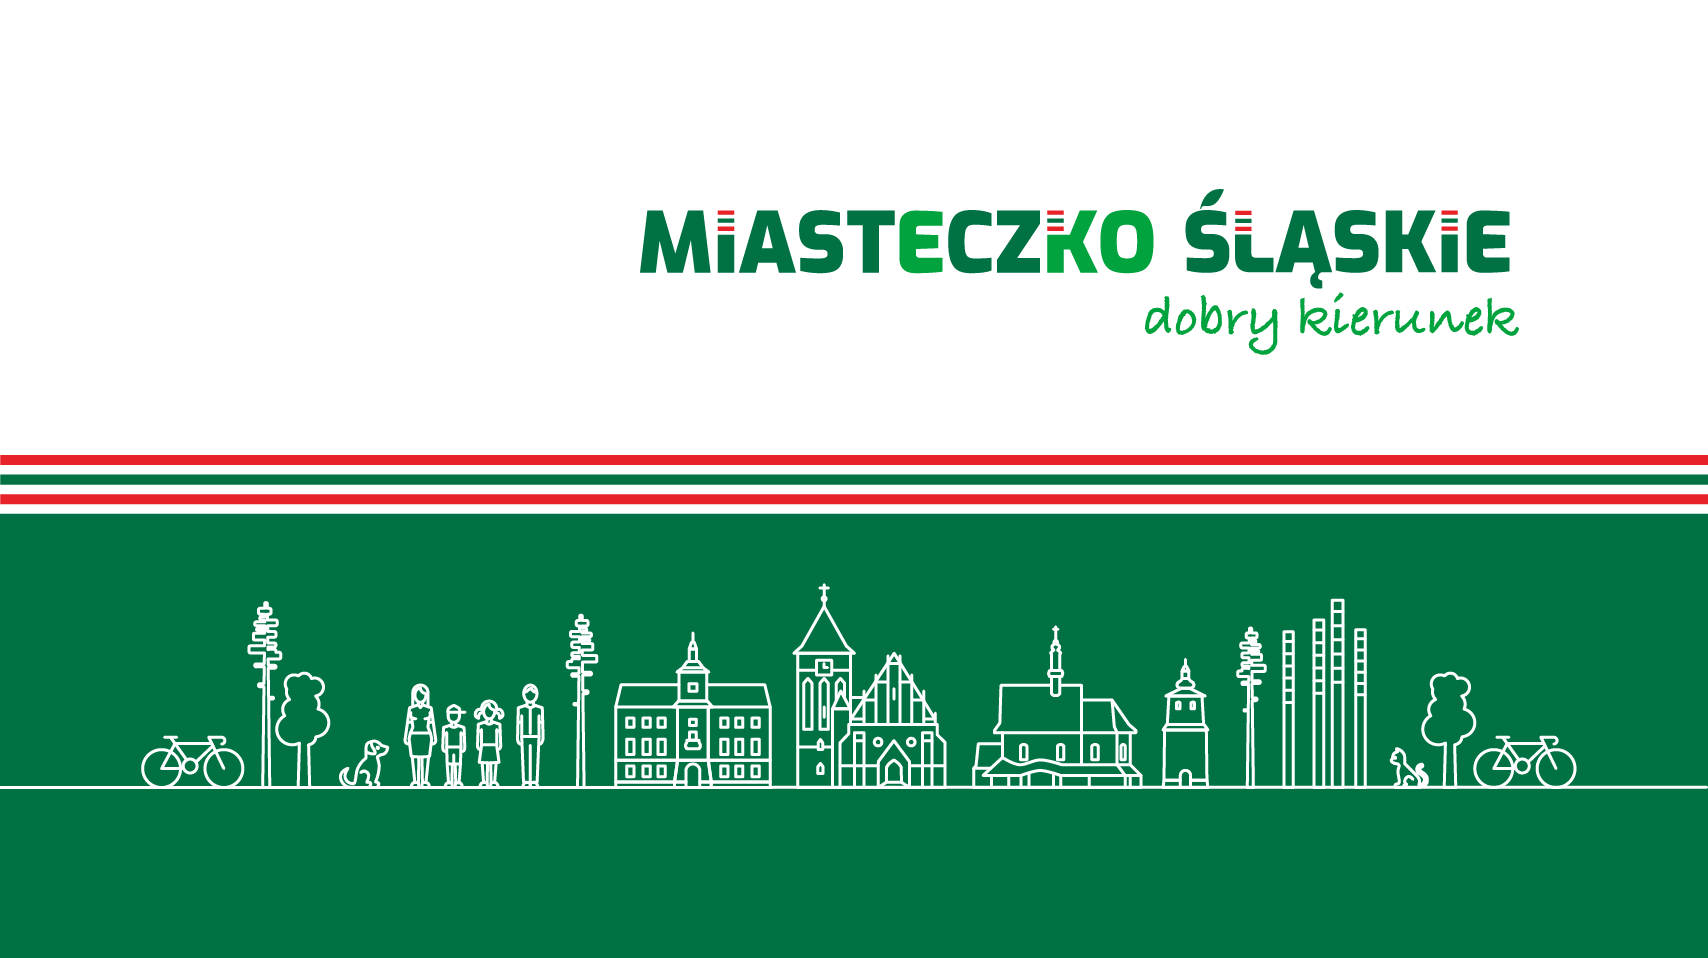 Zarządzenie Nr 1232/22 Burmistrza Miasta Miasteczko Śląskie